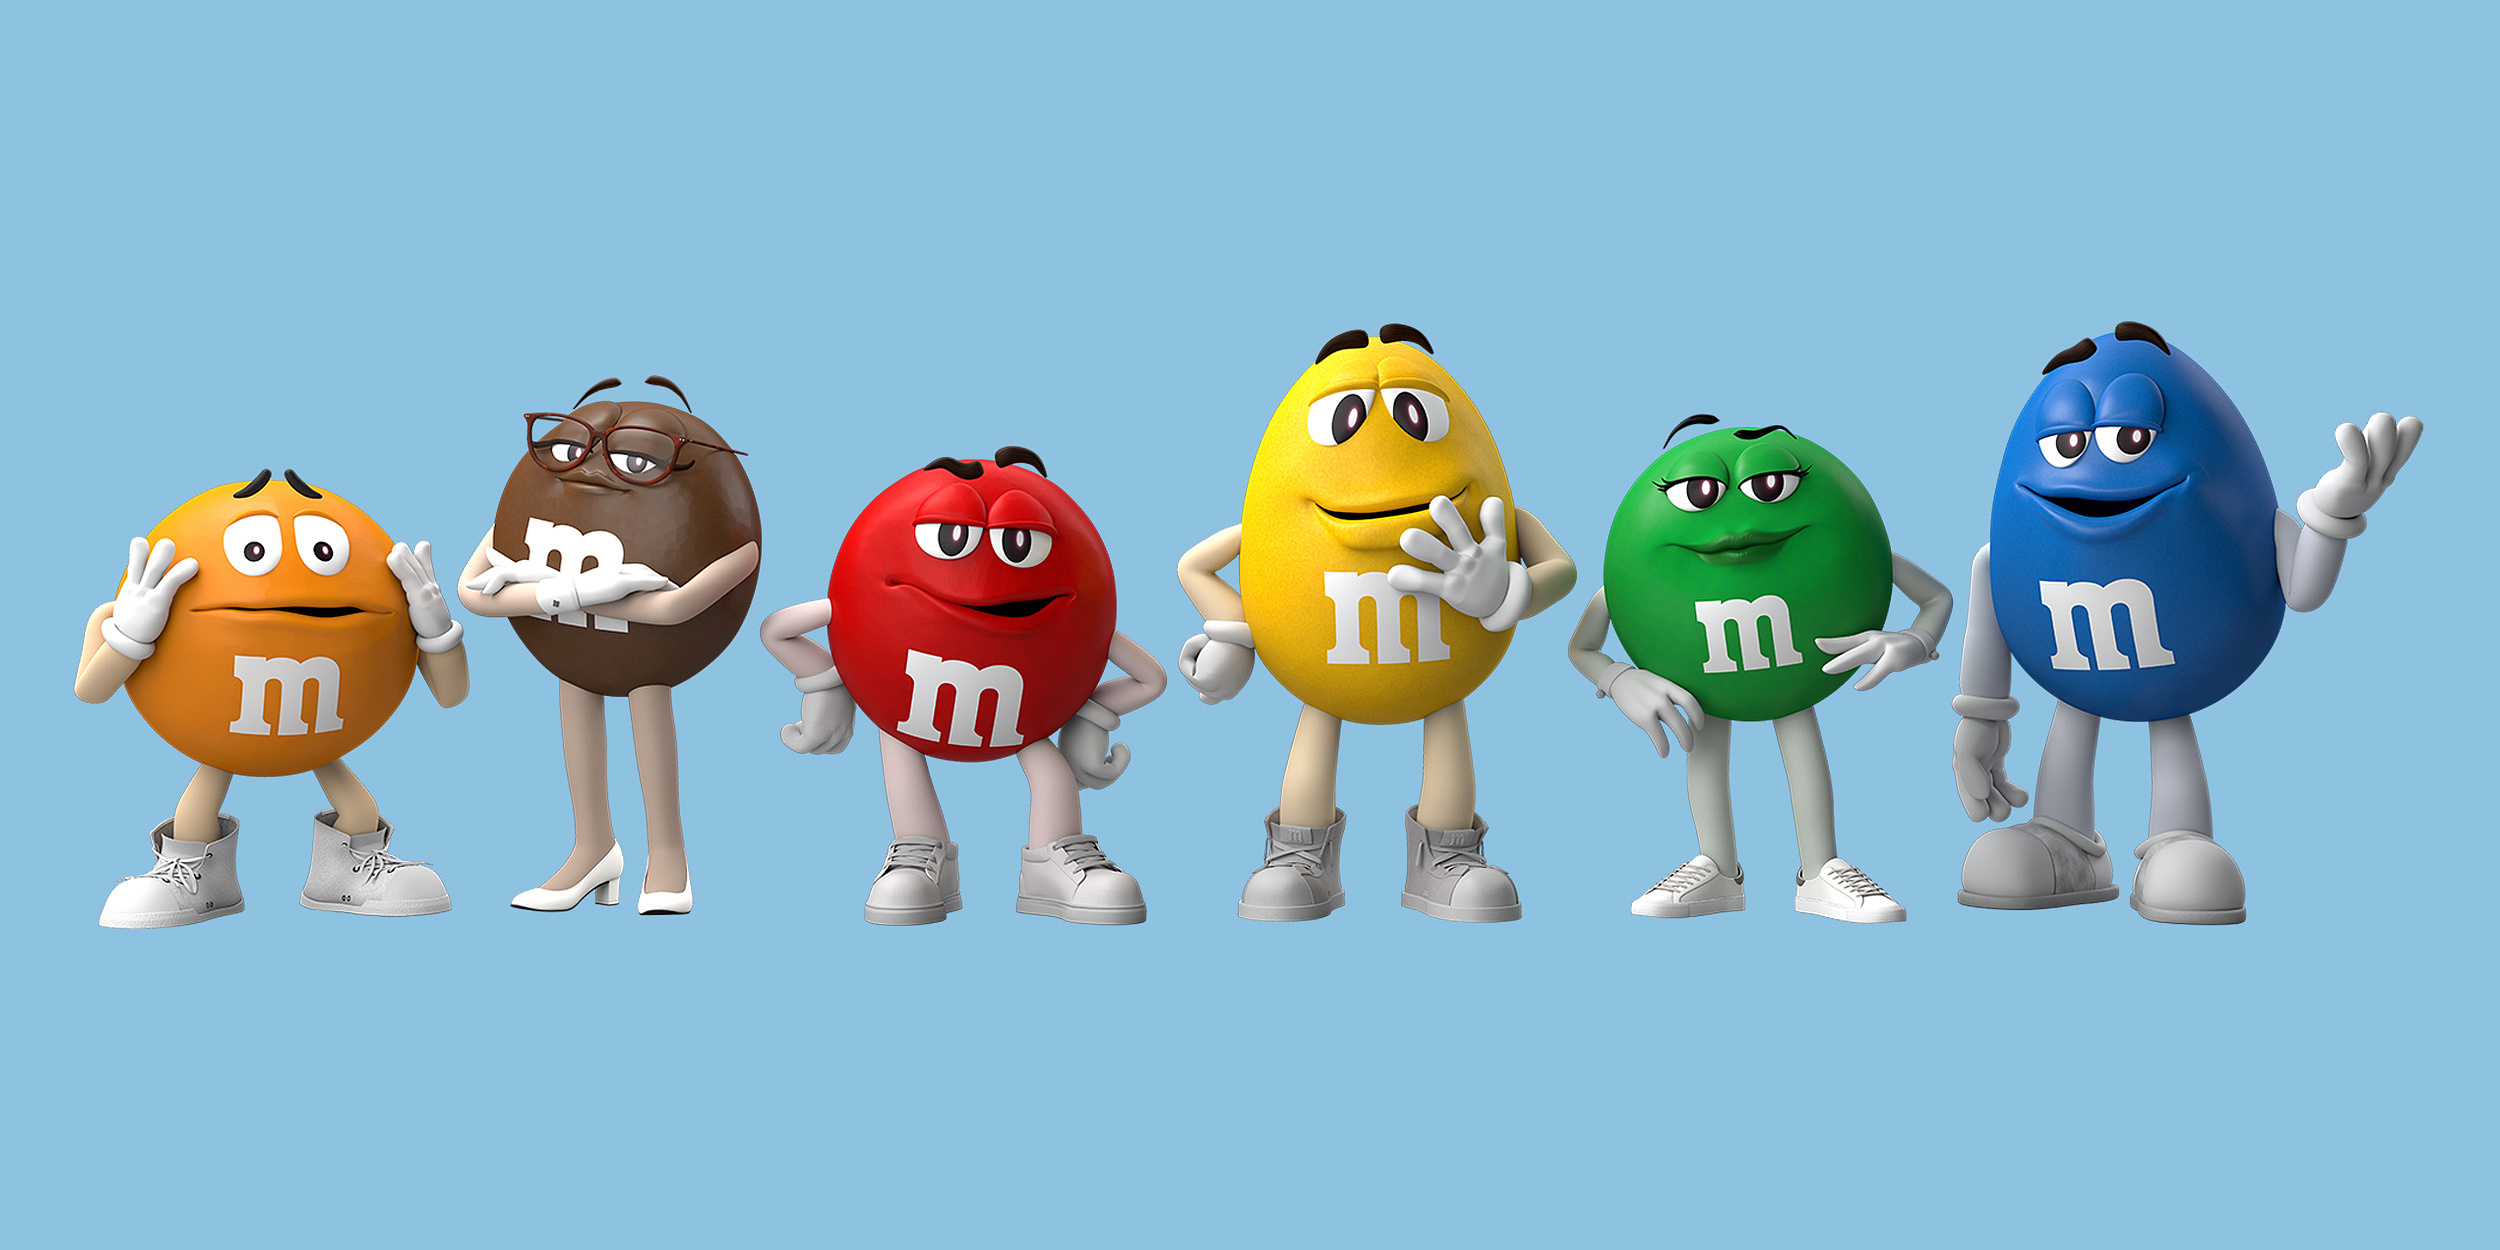 Переобулись: Говорящие конфеты уберут из рекламы M&M’s и заменят актрисой